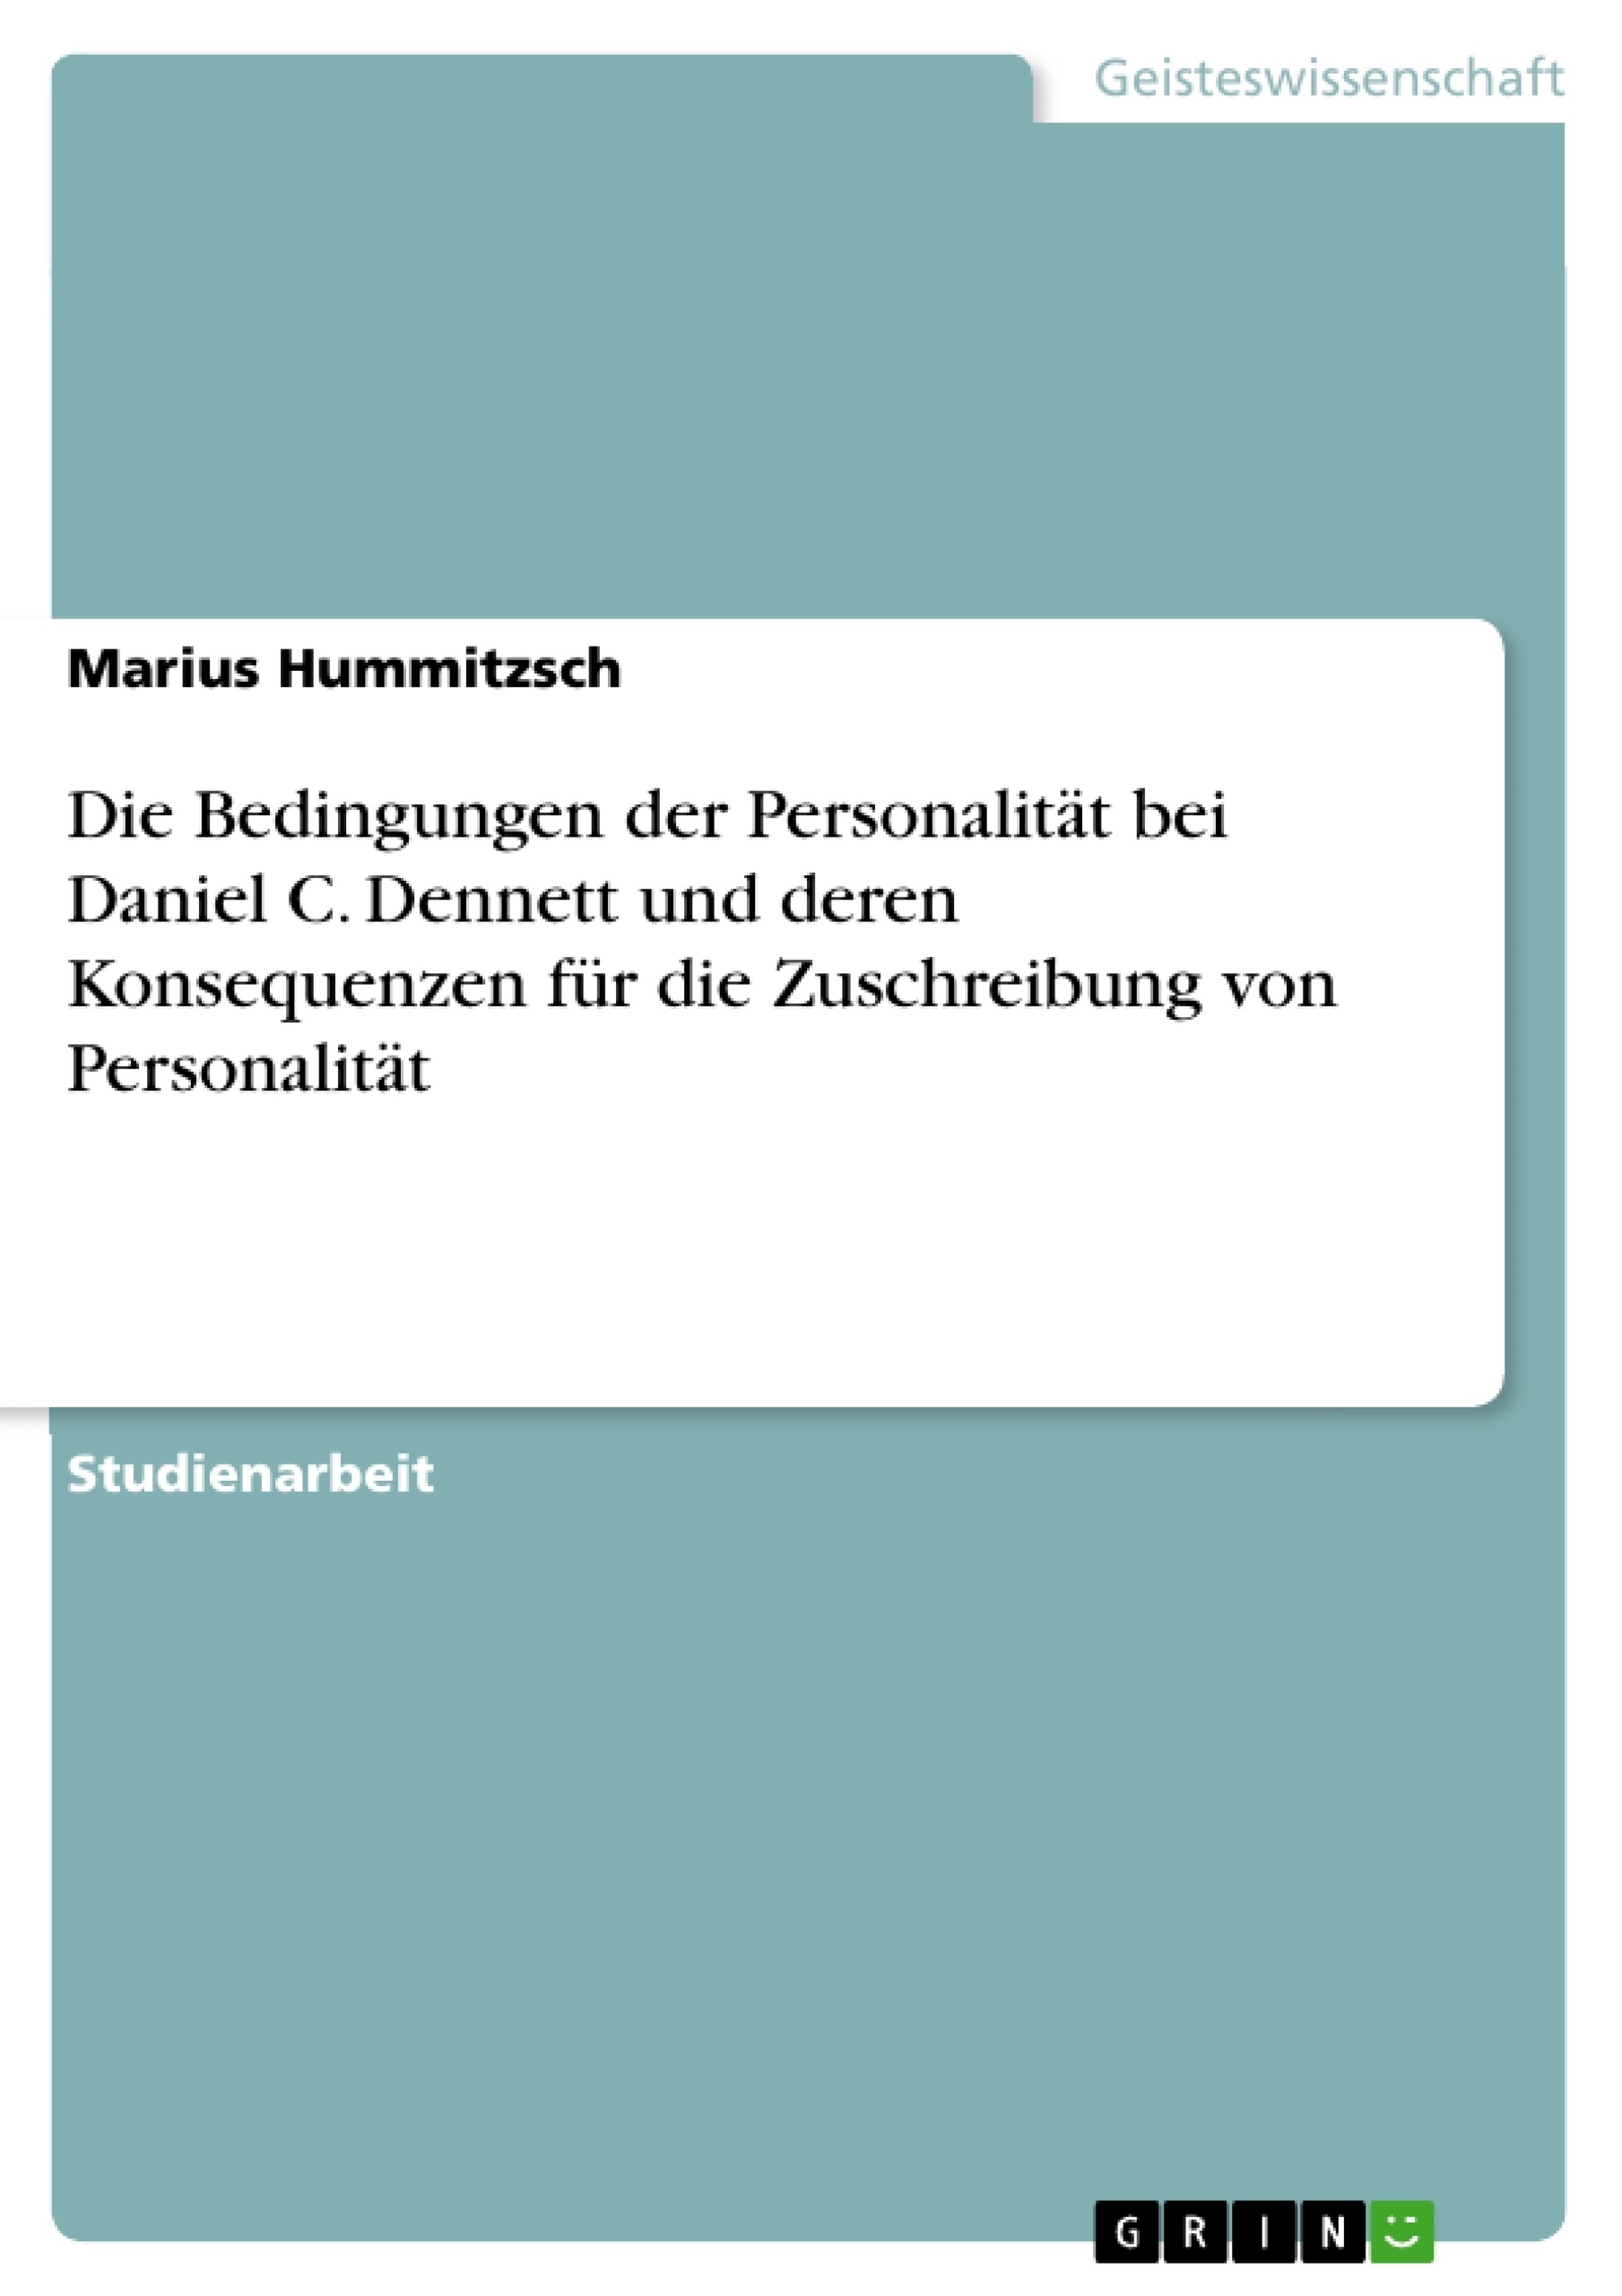 Titre: Die Bedingungen der Personalität bei Daniel C. Dennett und deren Konsequenzen für die Zuschreibung von Personalität